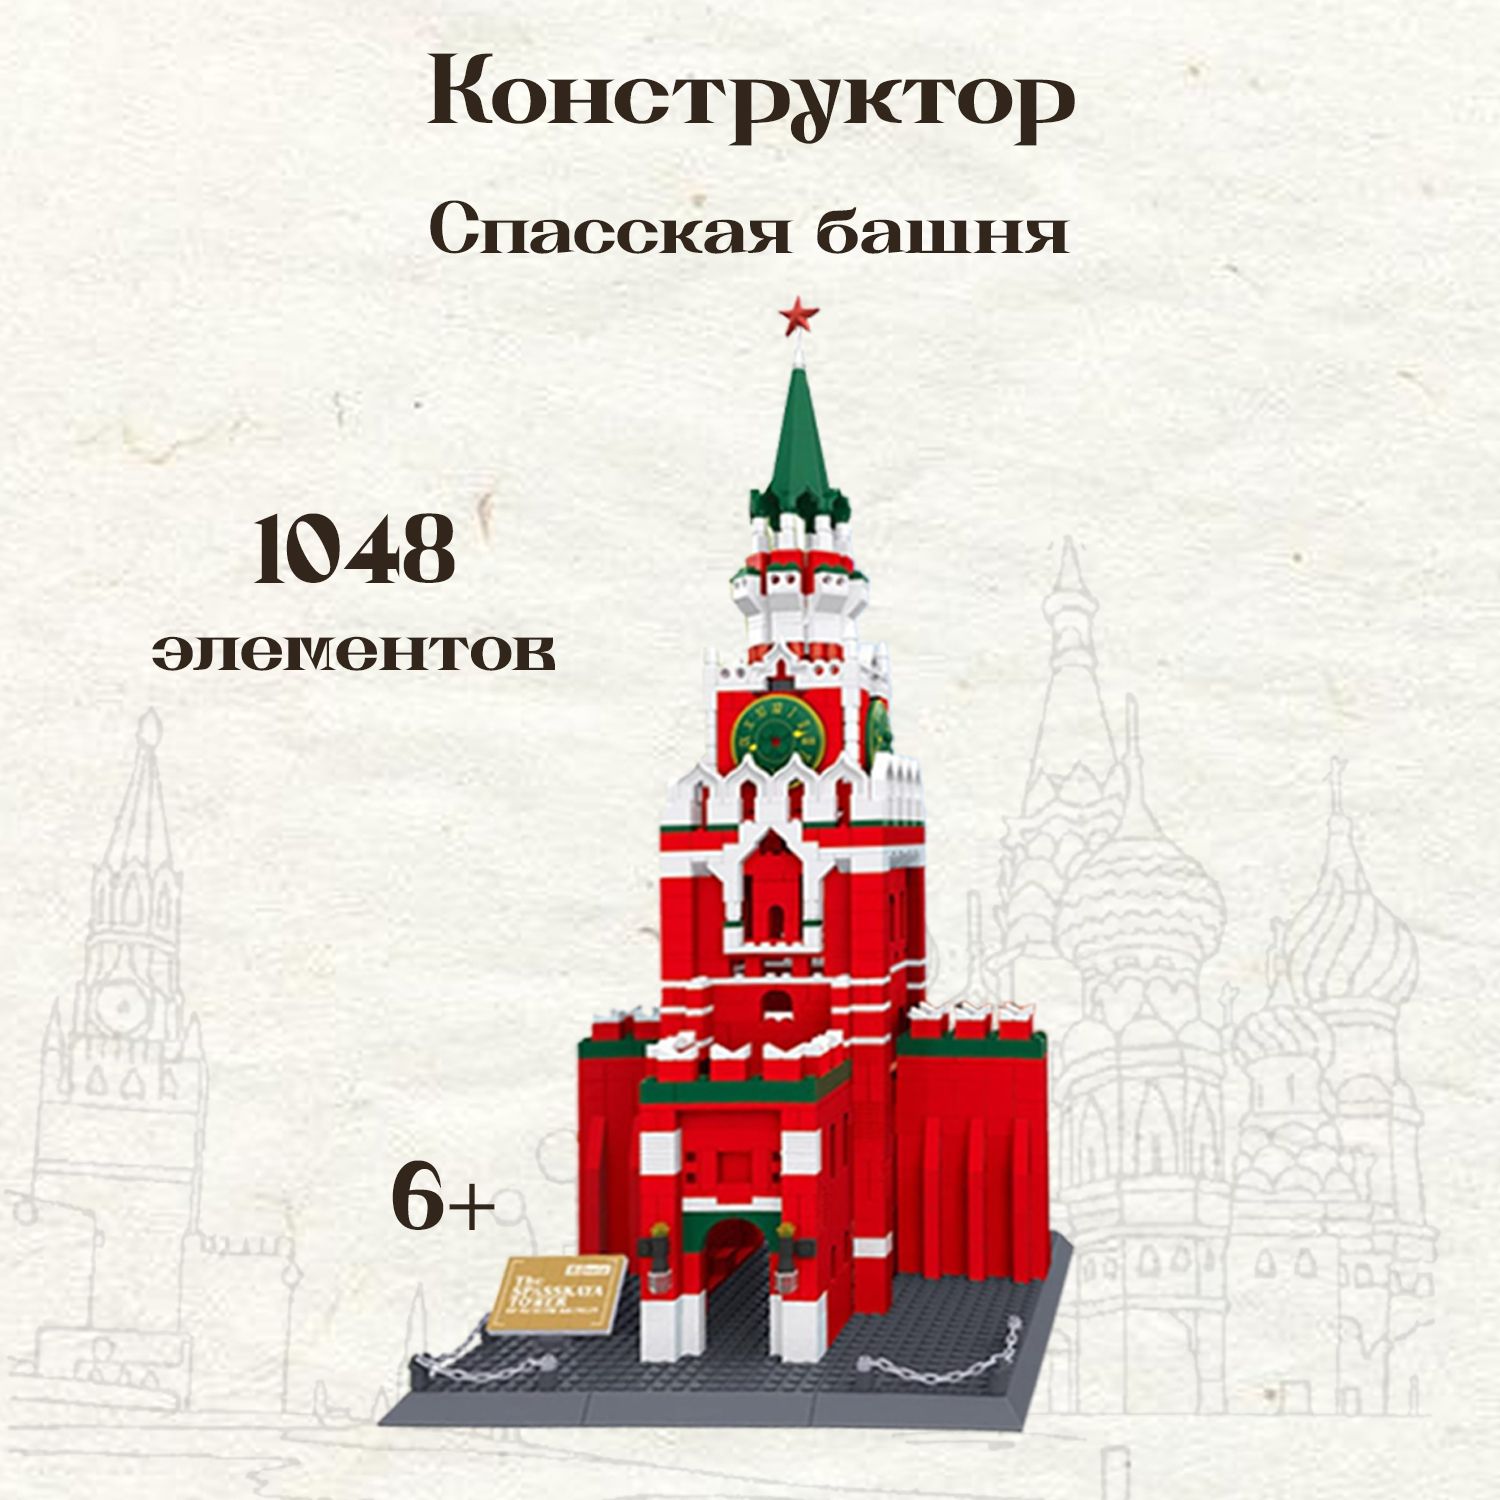 Макеты кремлей из картона и бумаги: кремль из бумаги своими руками